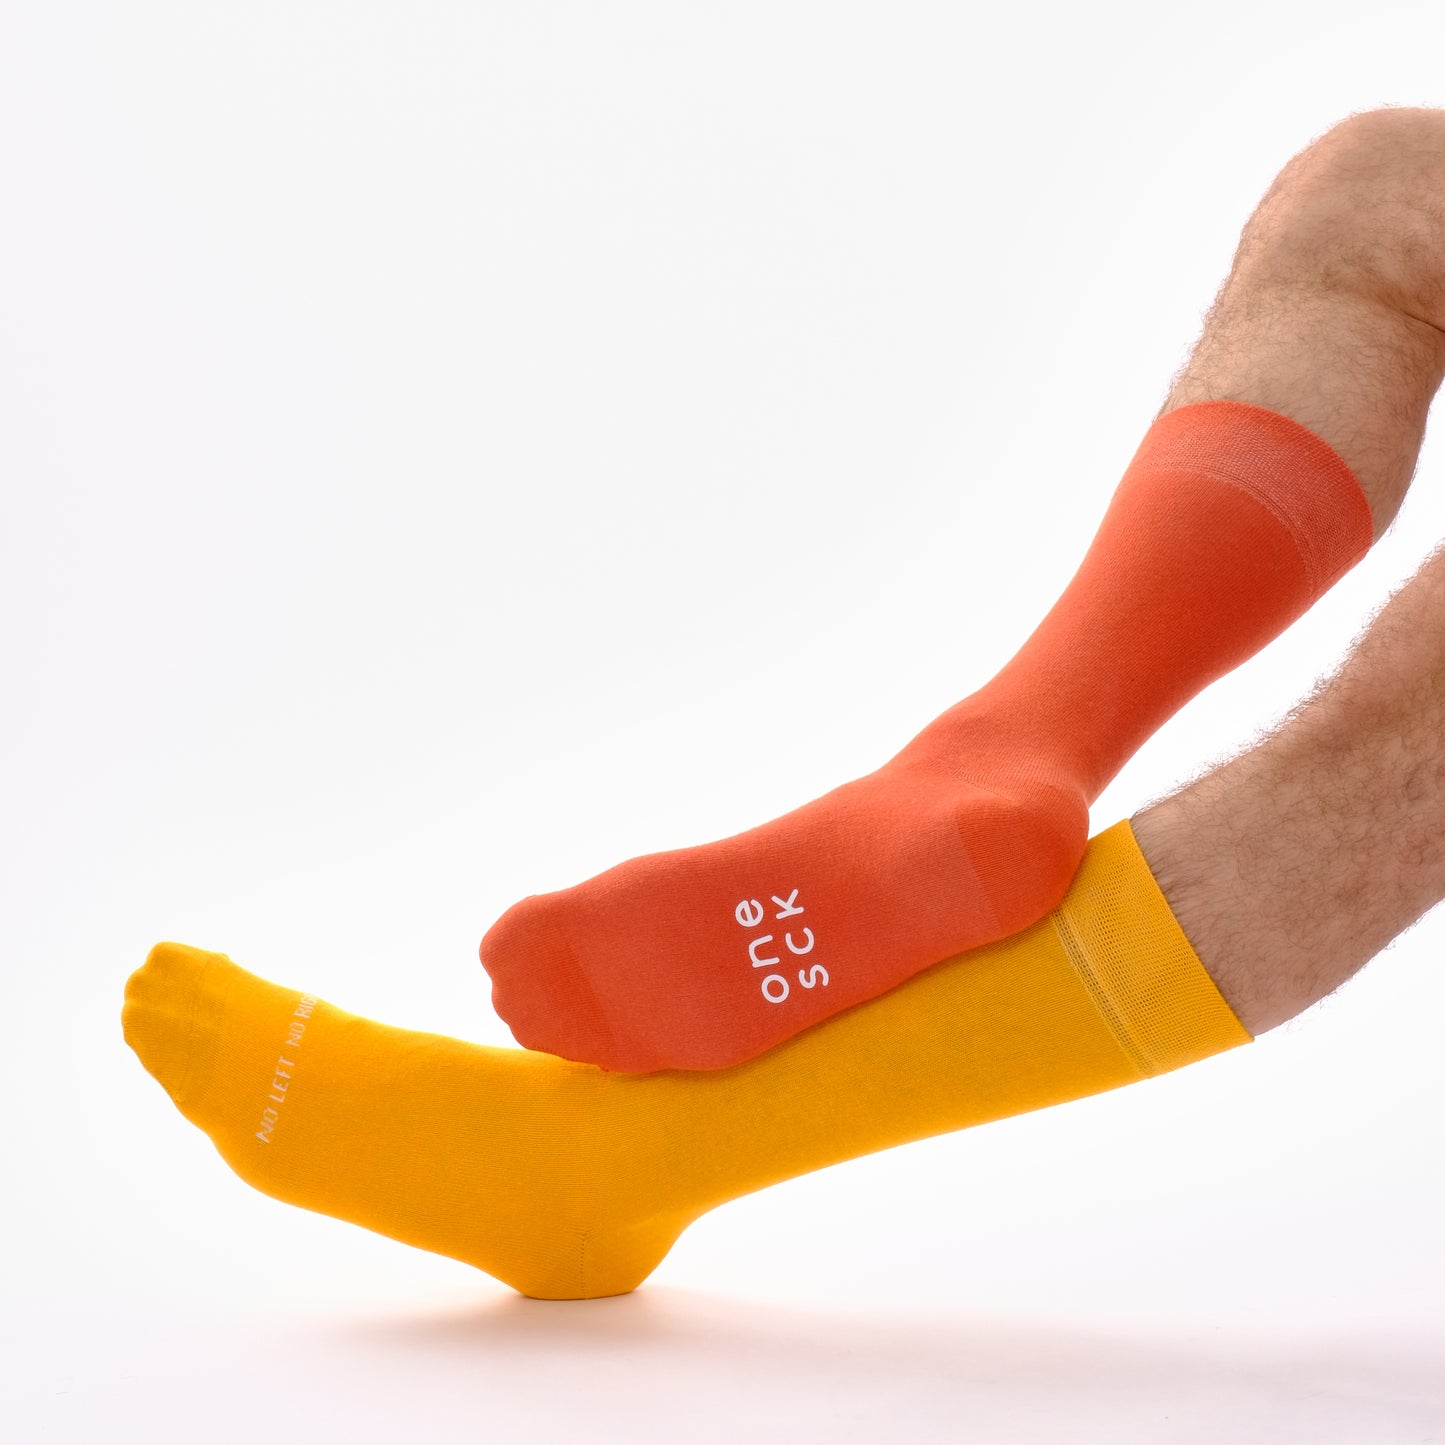 Mustard Yellow & Burnt Orange Odd Socks